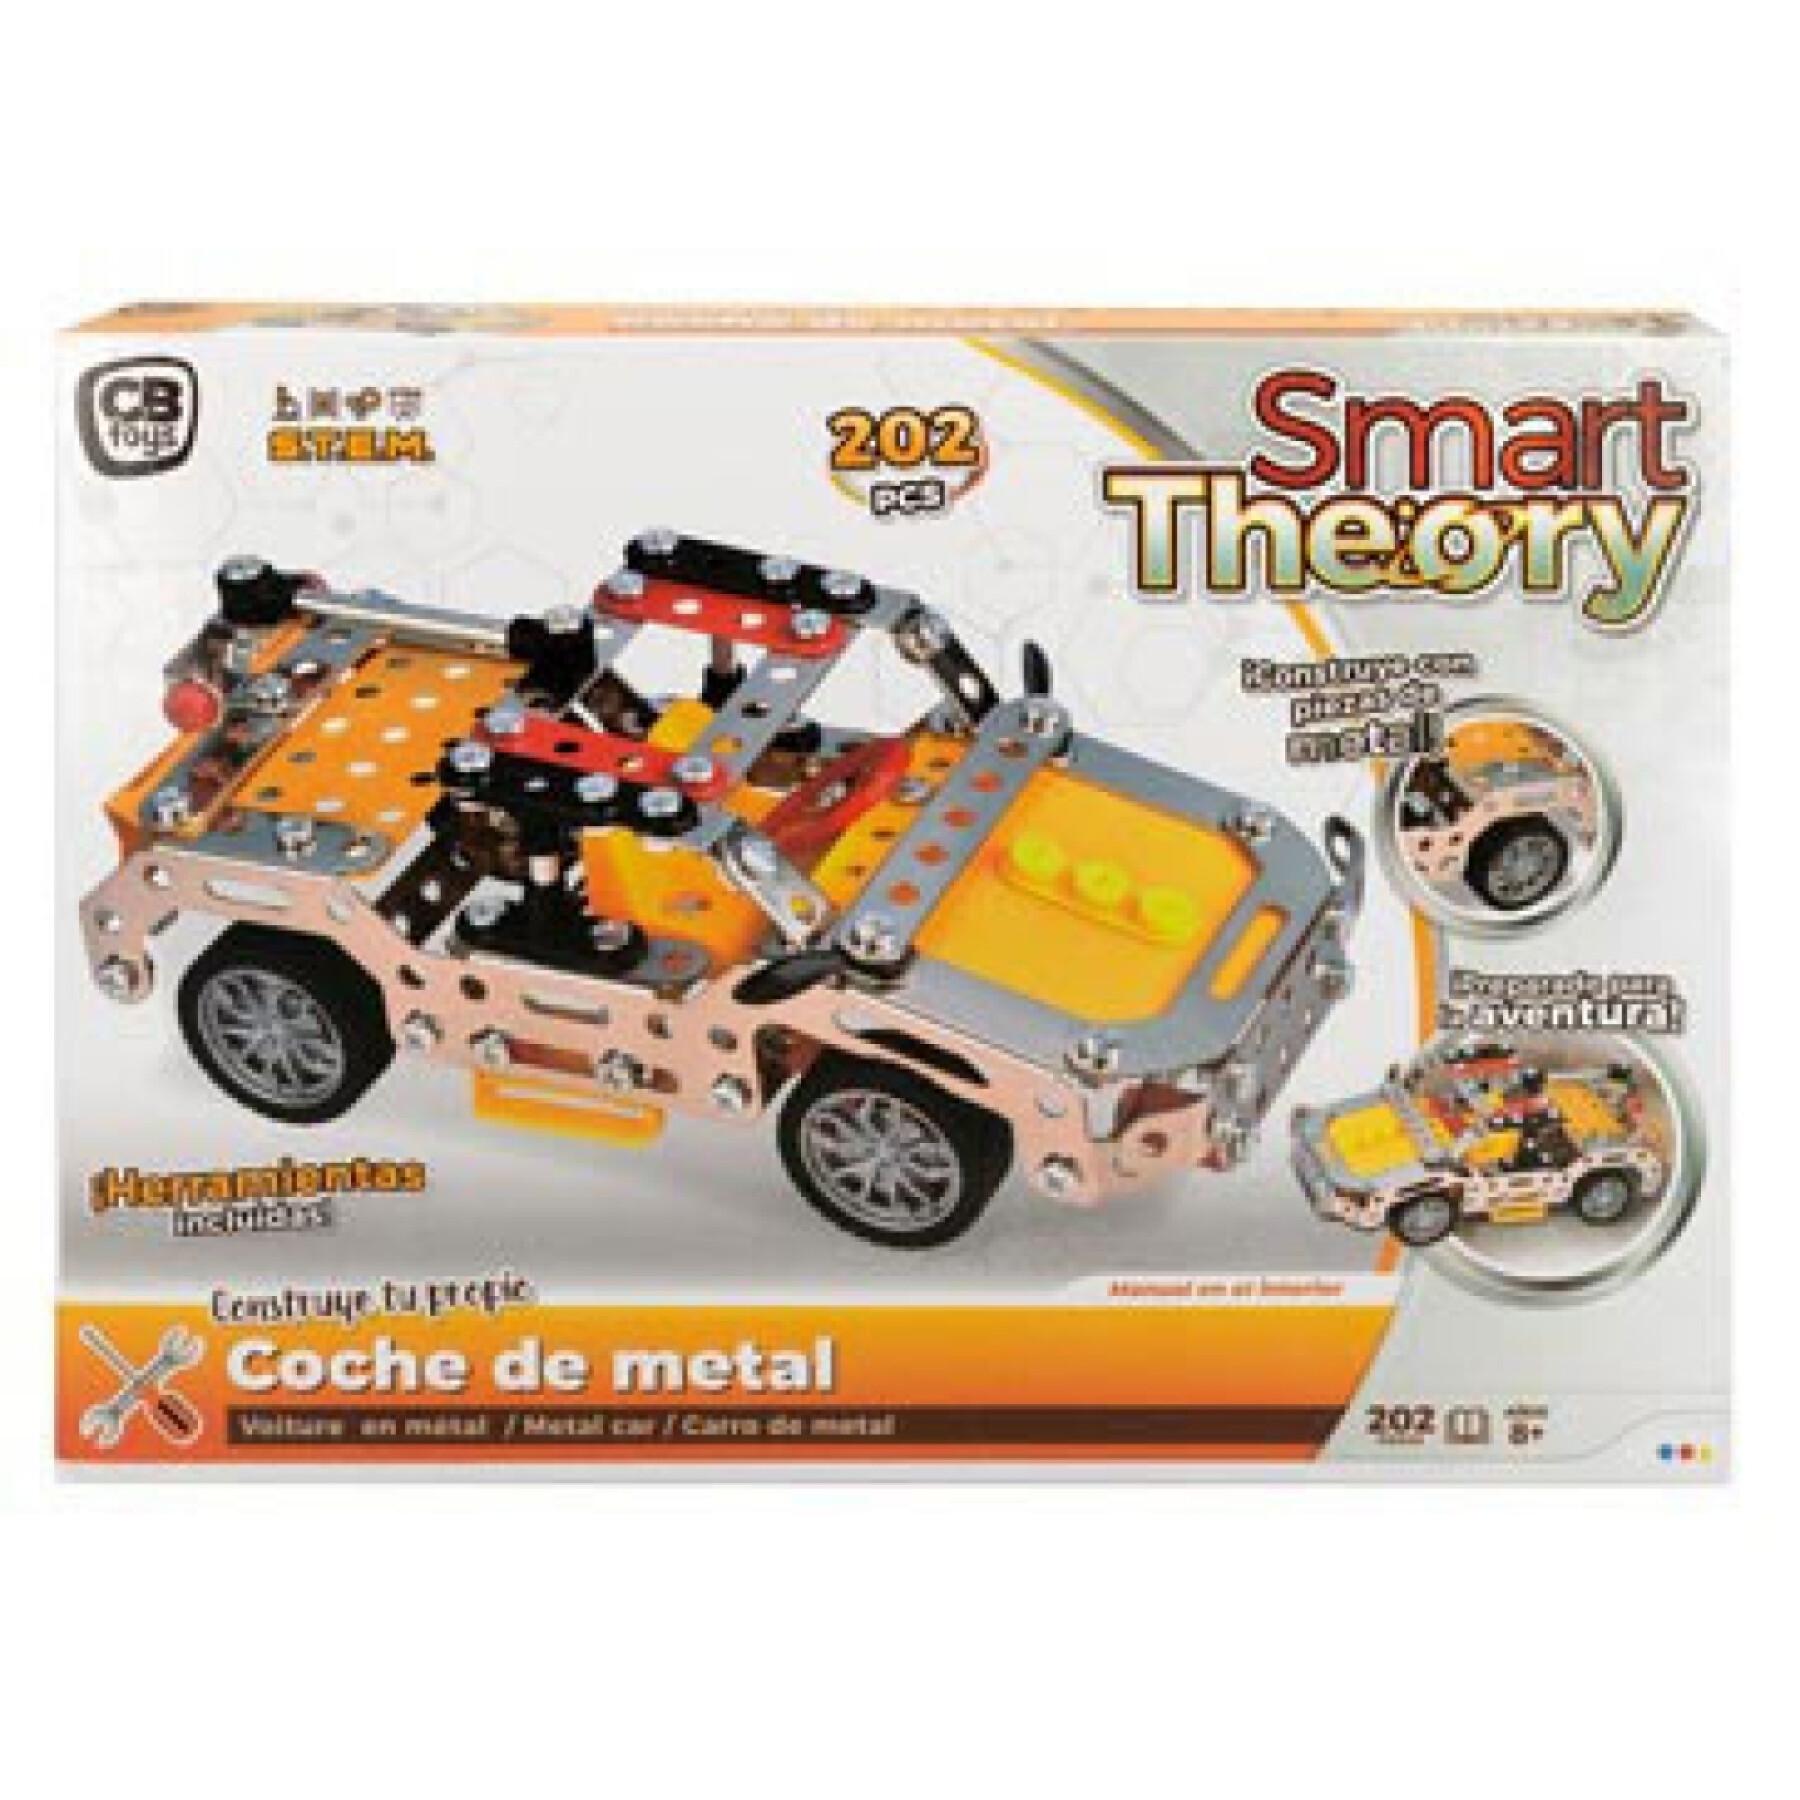 Conjunto de construção metálica mecânica CB Toys